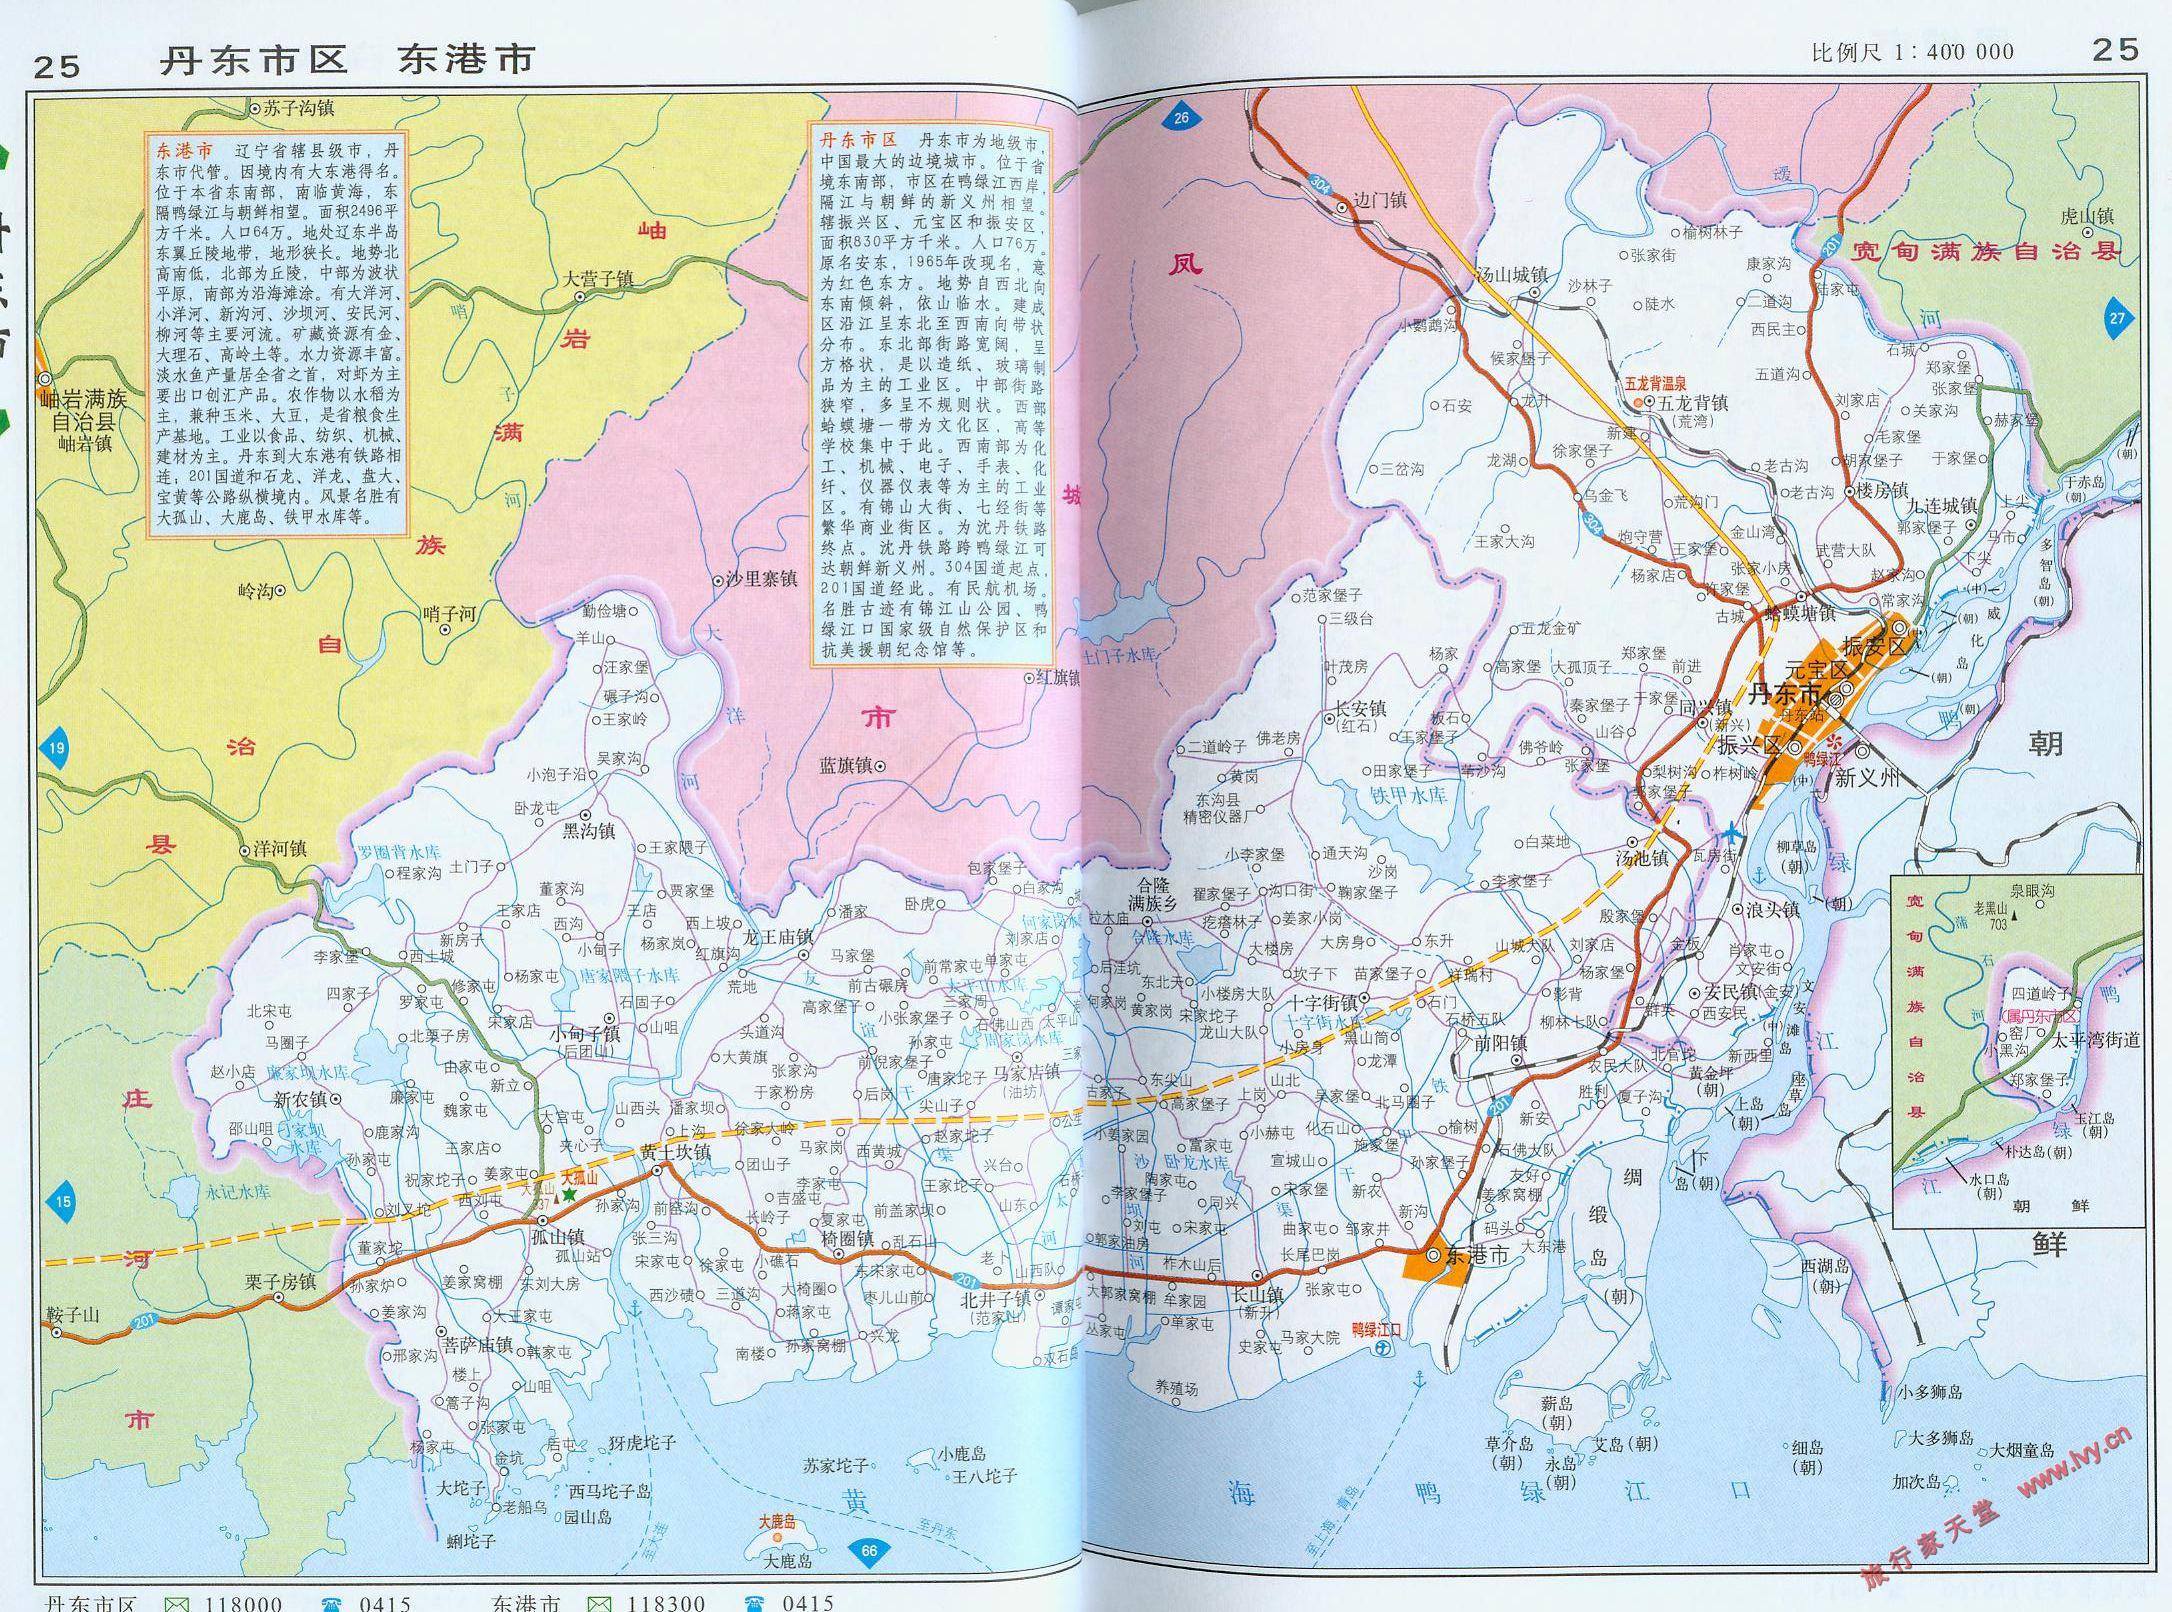 地图窝 中国地图 辽宁 丹东  (长按地图可以放大,保存,分享)图片